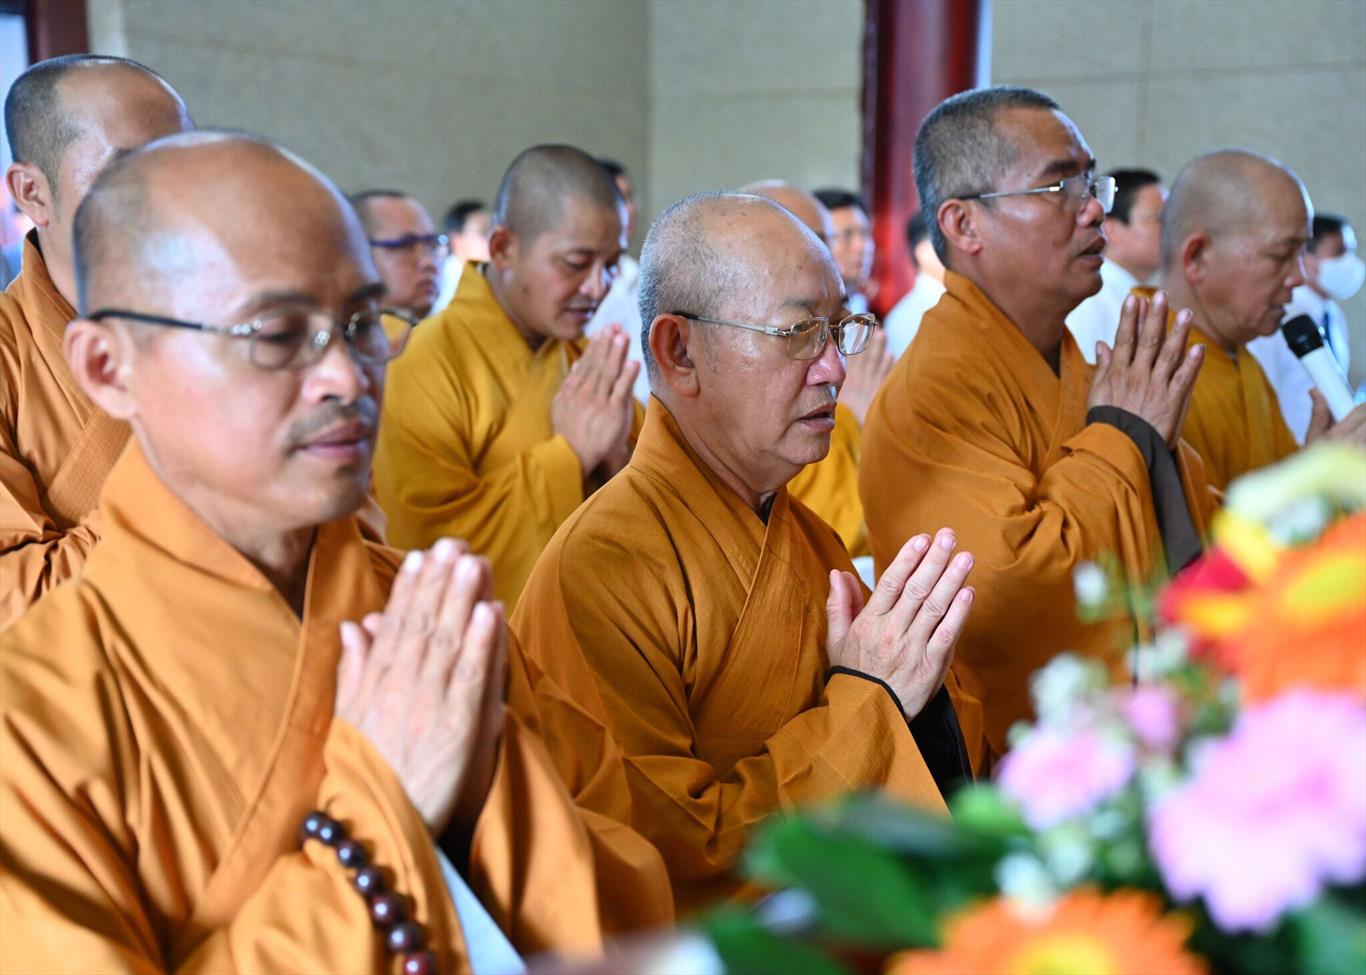 Phật giáo tỉnh Long An Tưởng niệm Anh hùng liệt sĩ nhân kỷ niệm 75 năm ngày Thương binh – Liệt sĩ